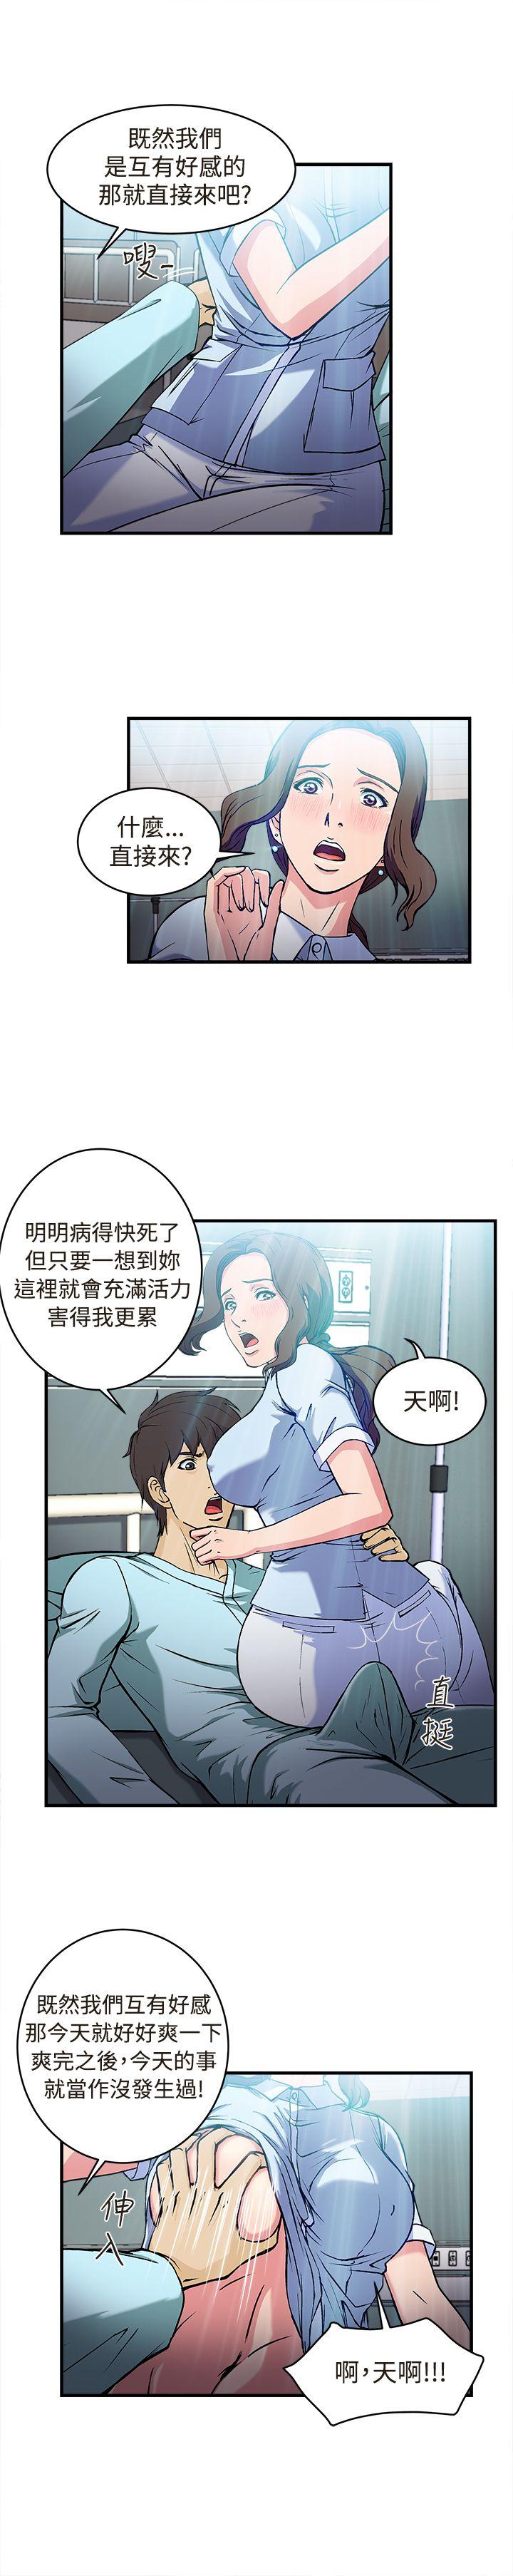 制服的诱惑  护士篇(4) 漫画图片14.jpg